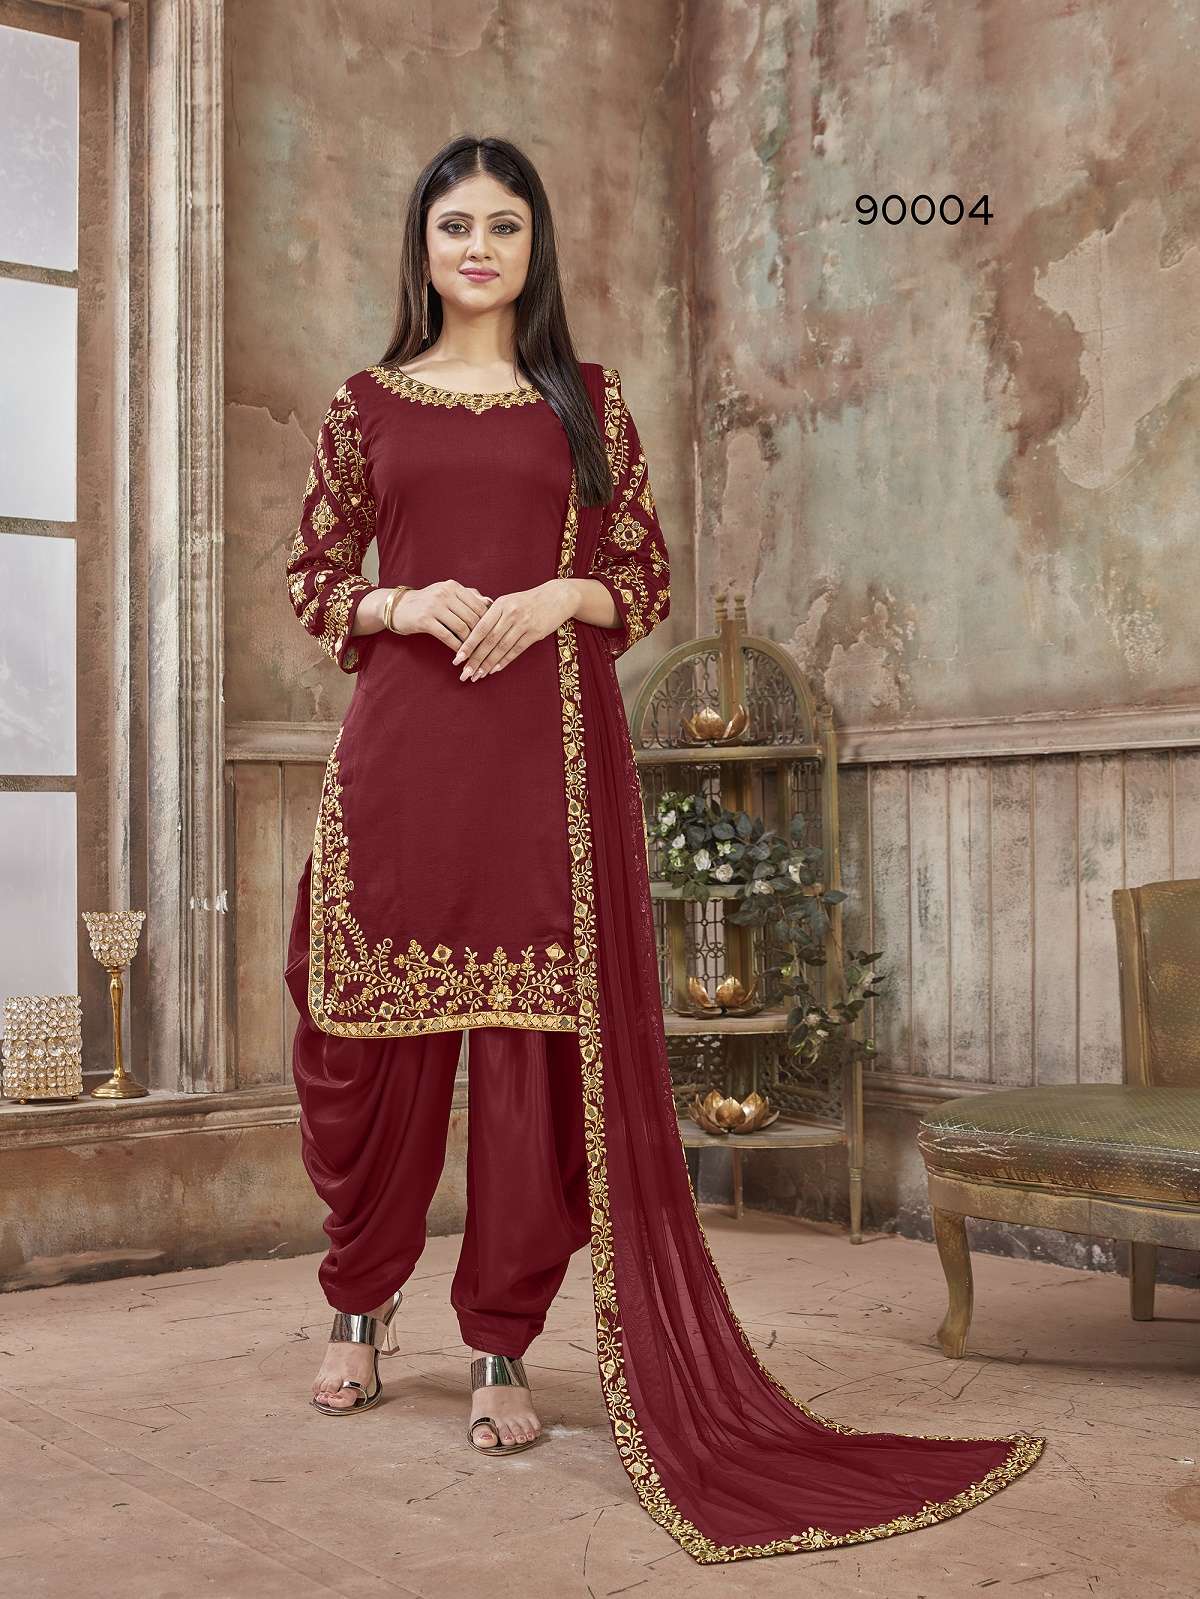 Indian Ethnic Wear Online Store | Designer suits online, Patiyala dress,  Salwar kameez designs